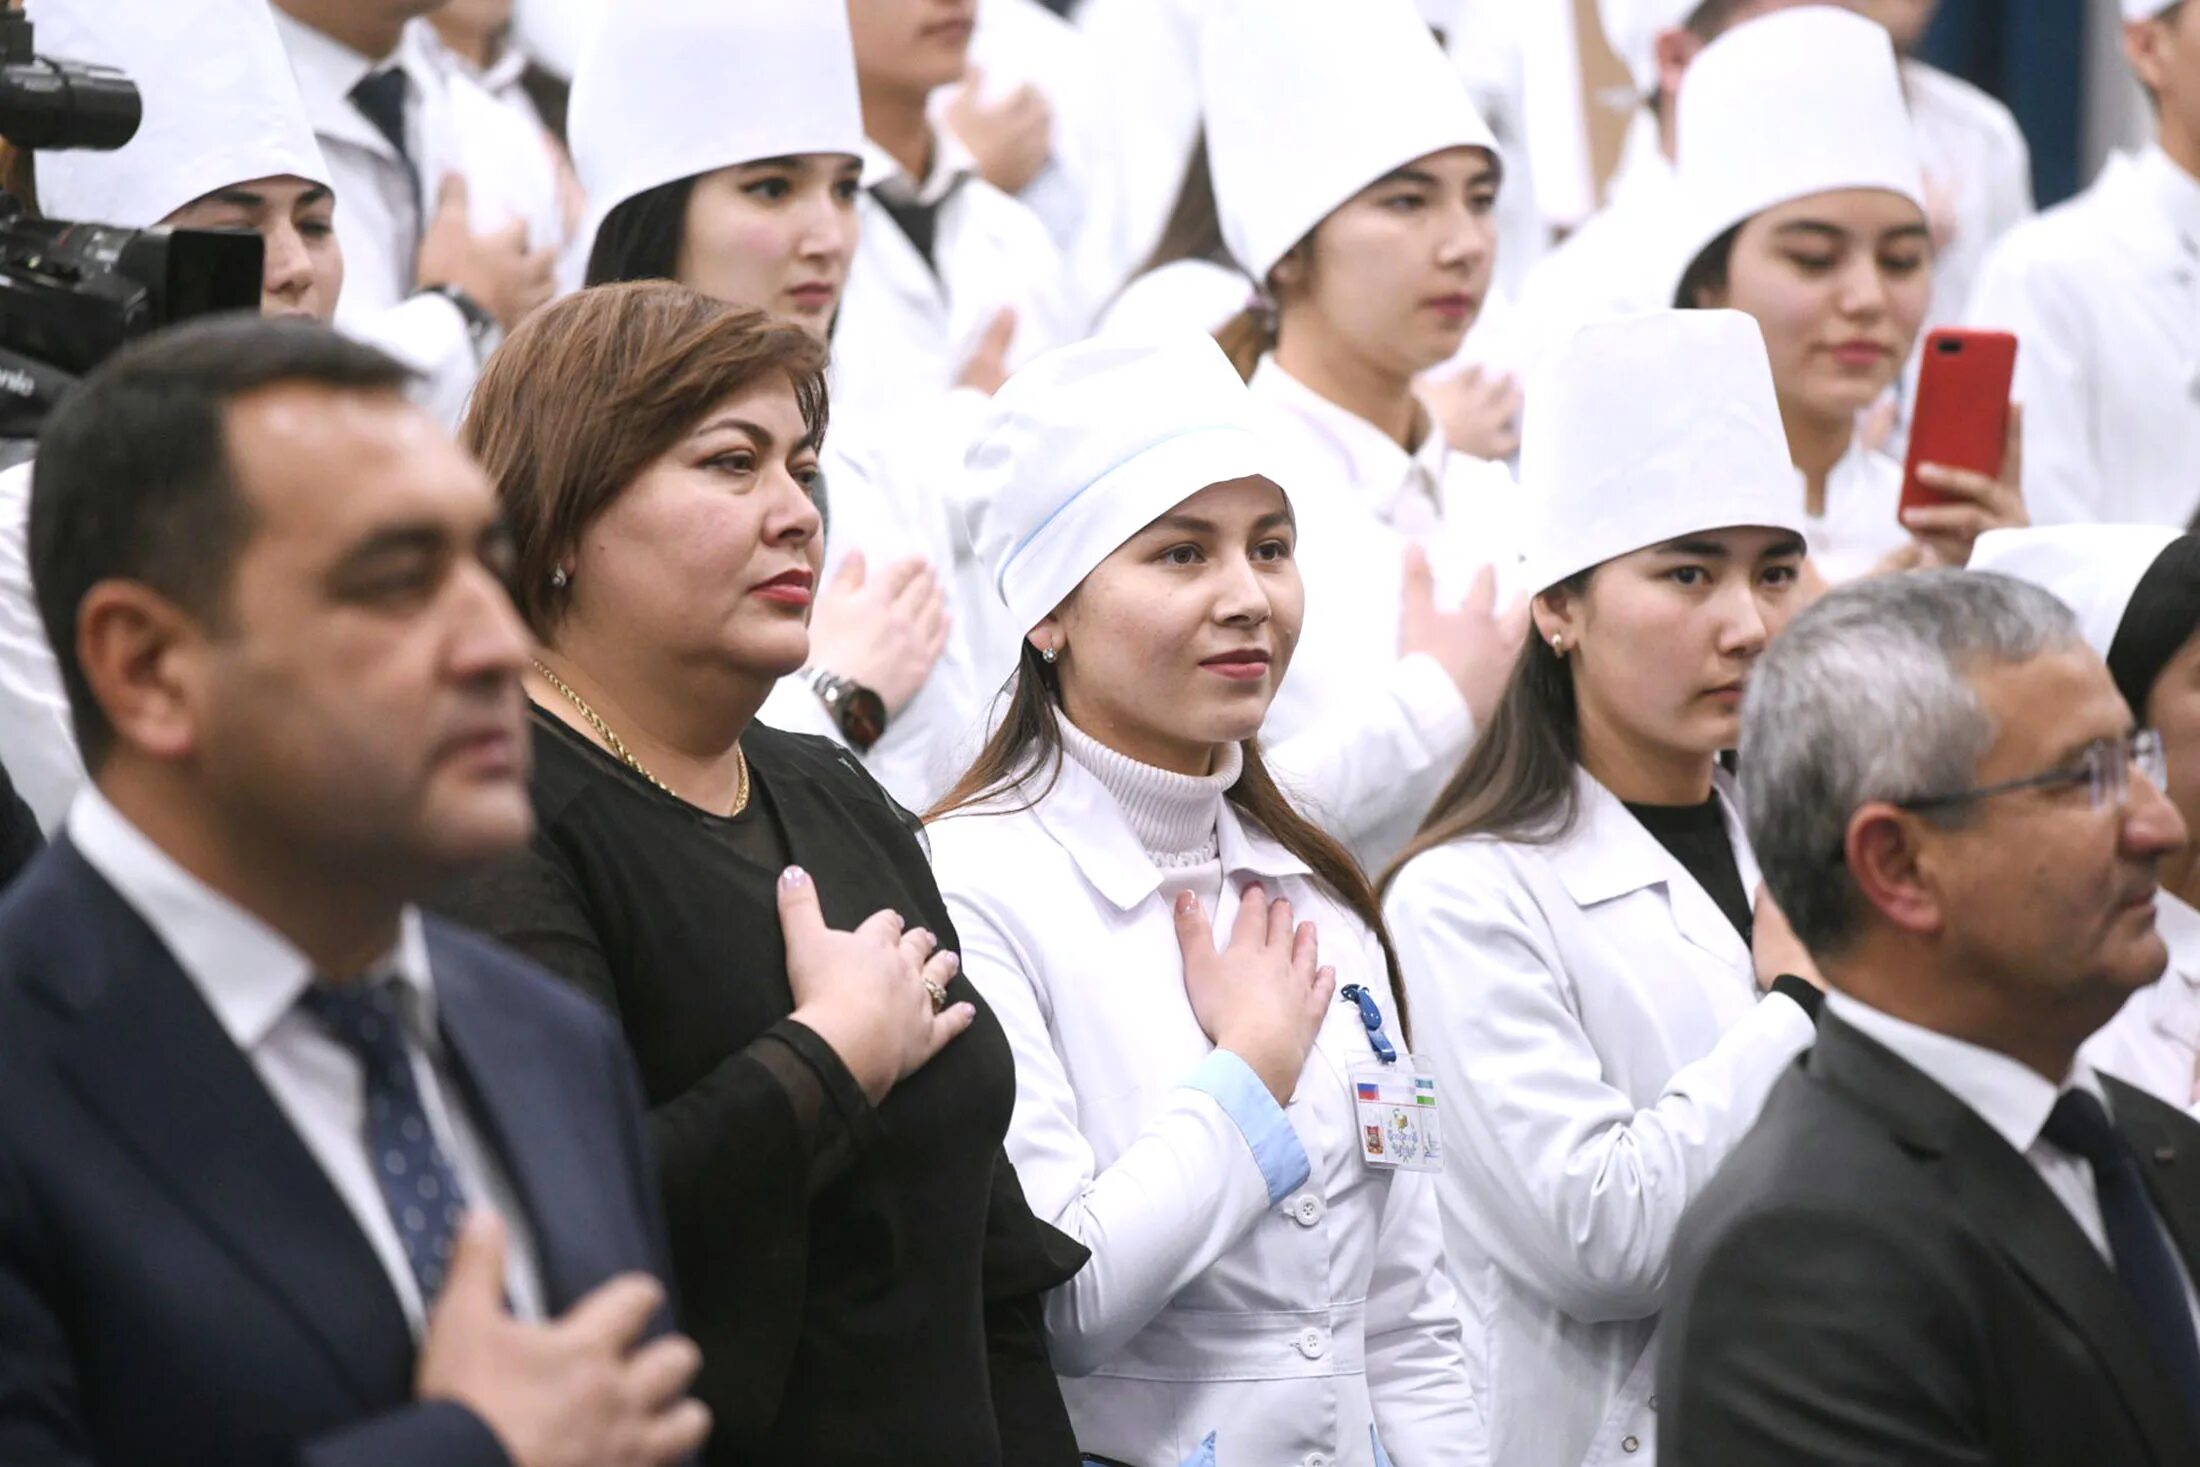 Медики клятва Гиппократа. Врачи дают клятву. Студенты Узбекистана. Студенты-медики клятву Гиппократа.